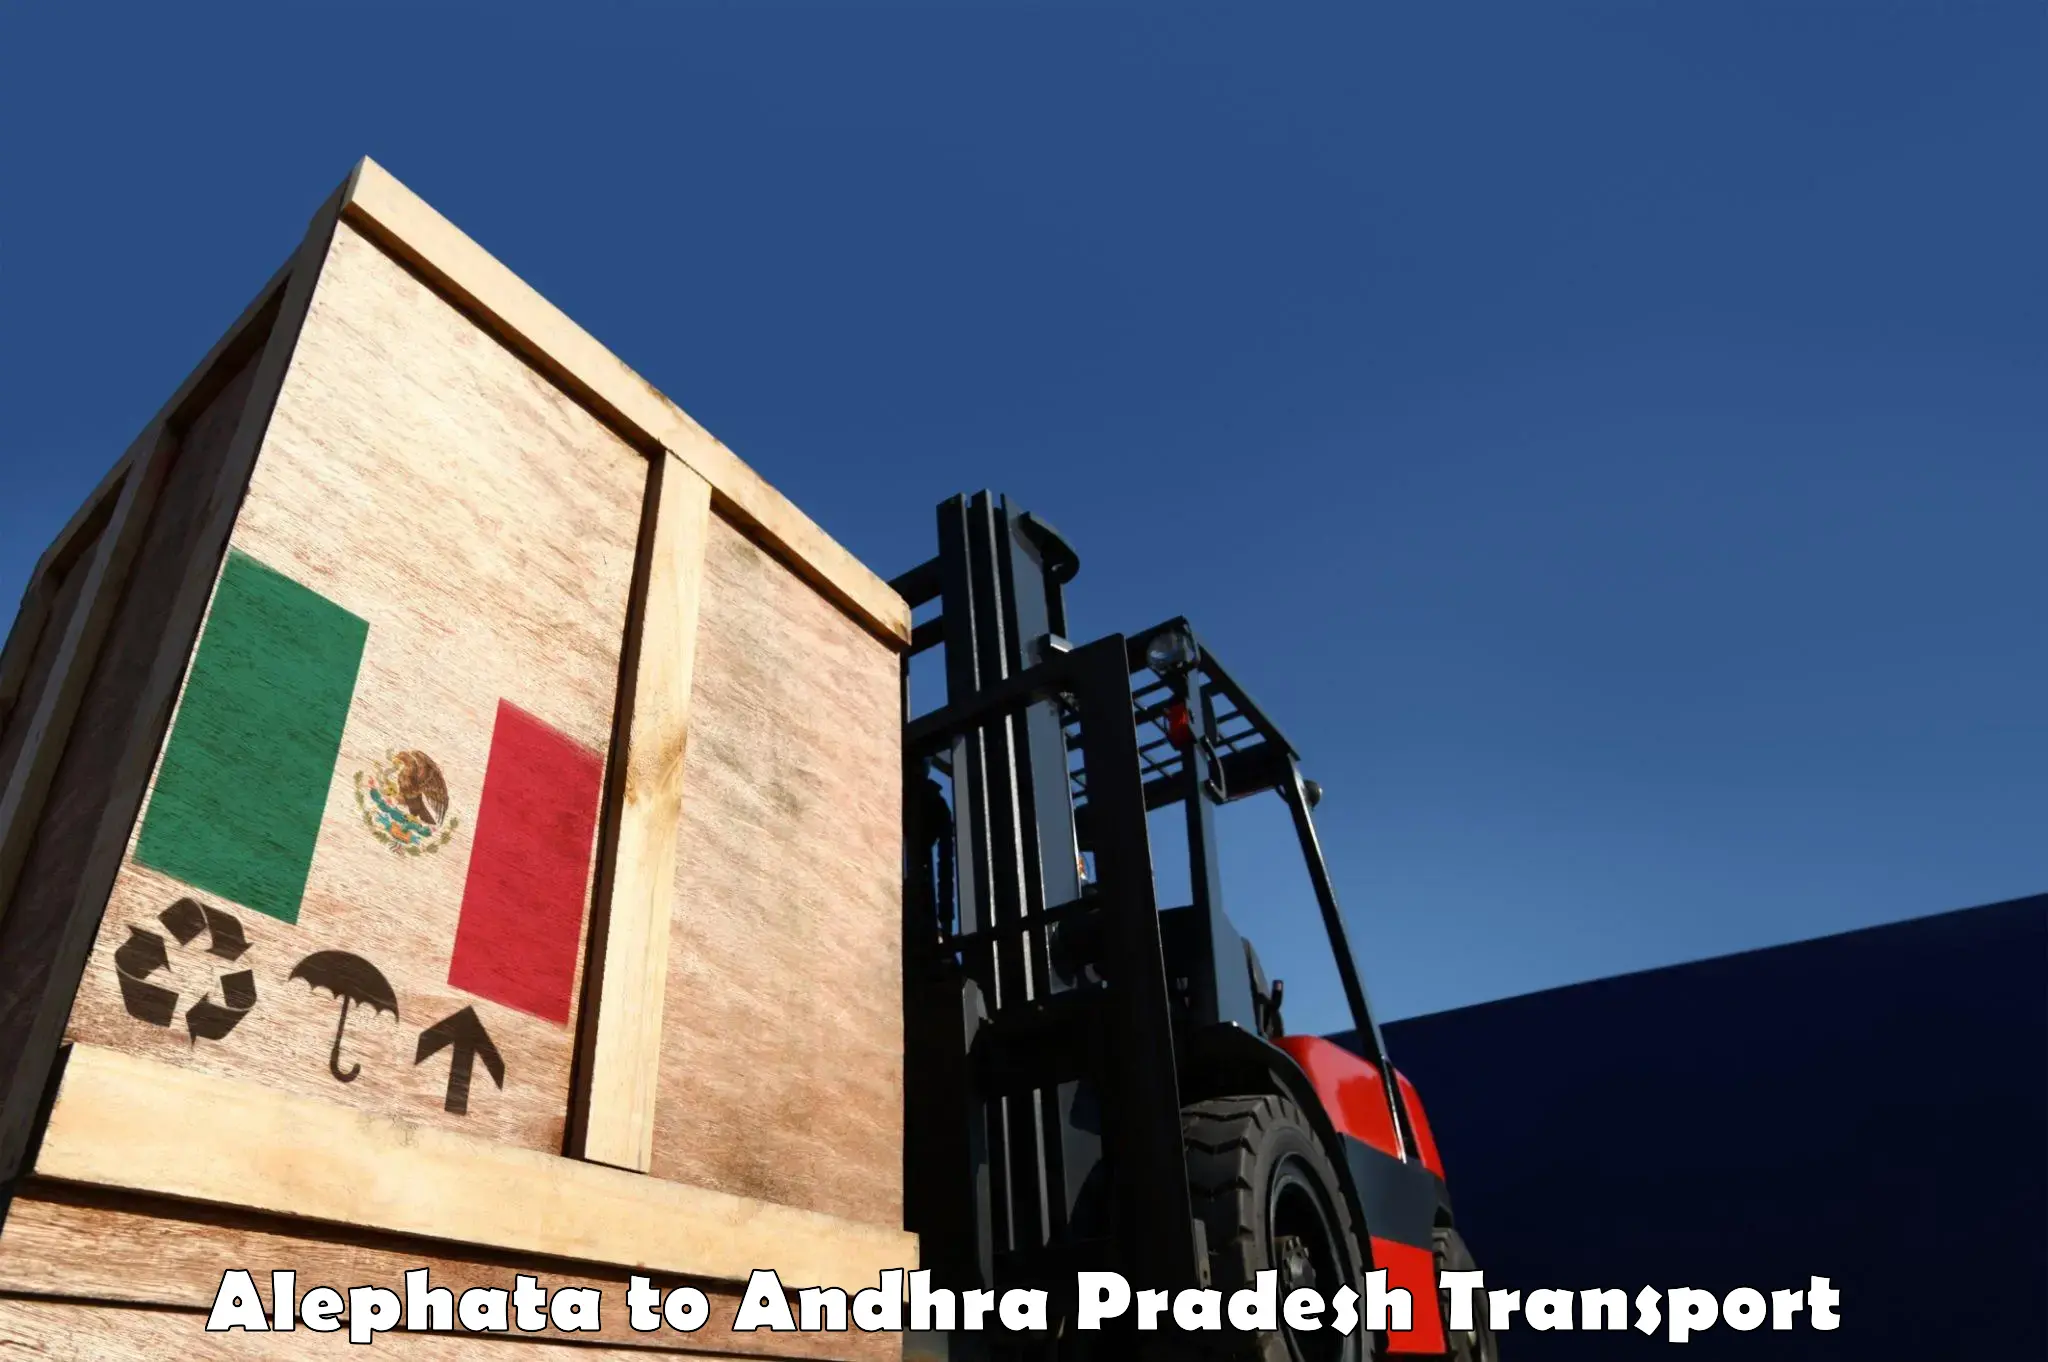 Air freight transport services Alephata to B Kothakota